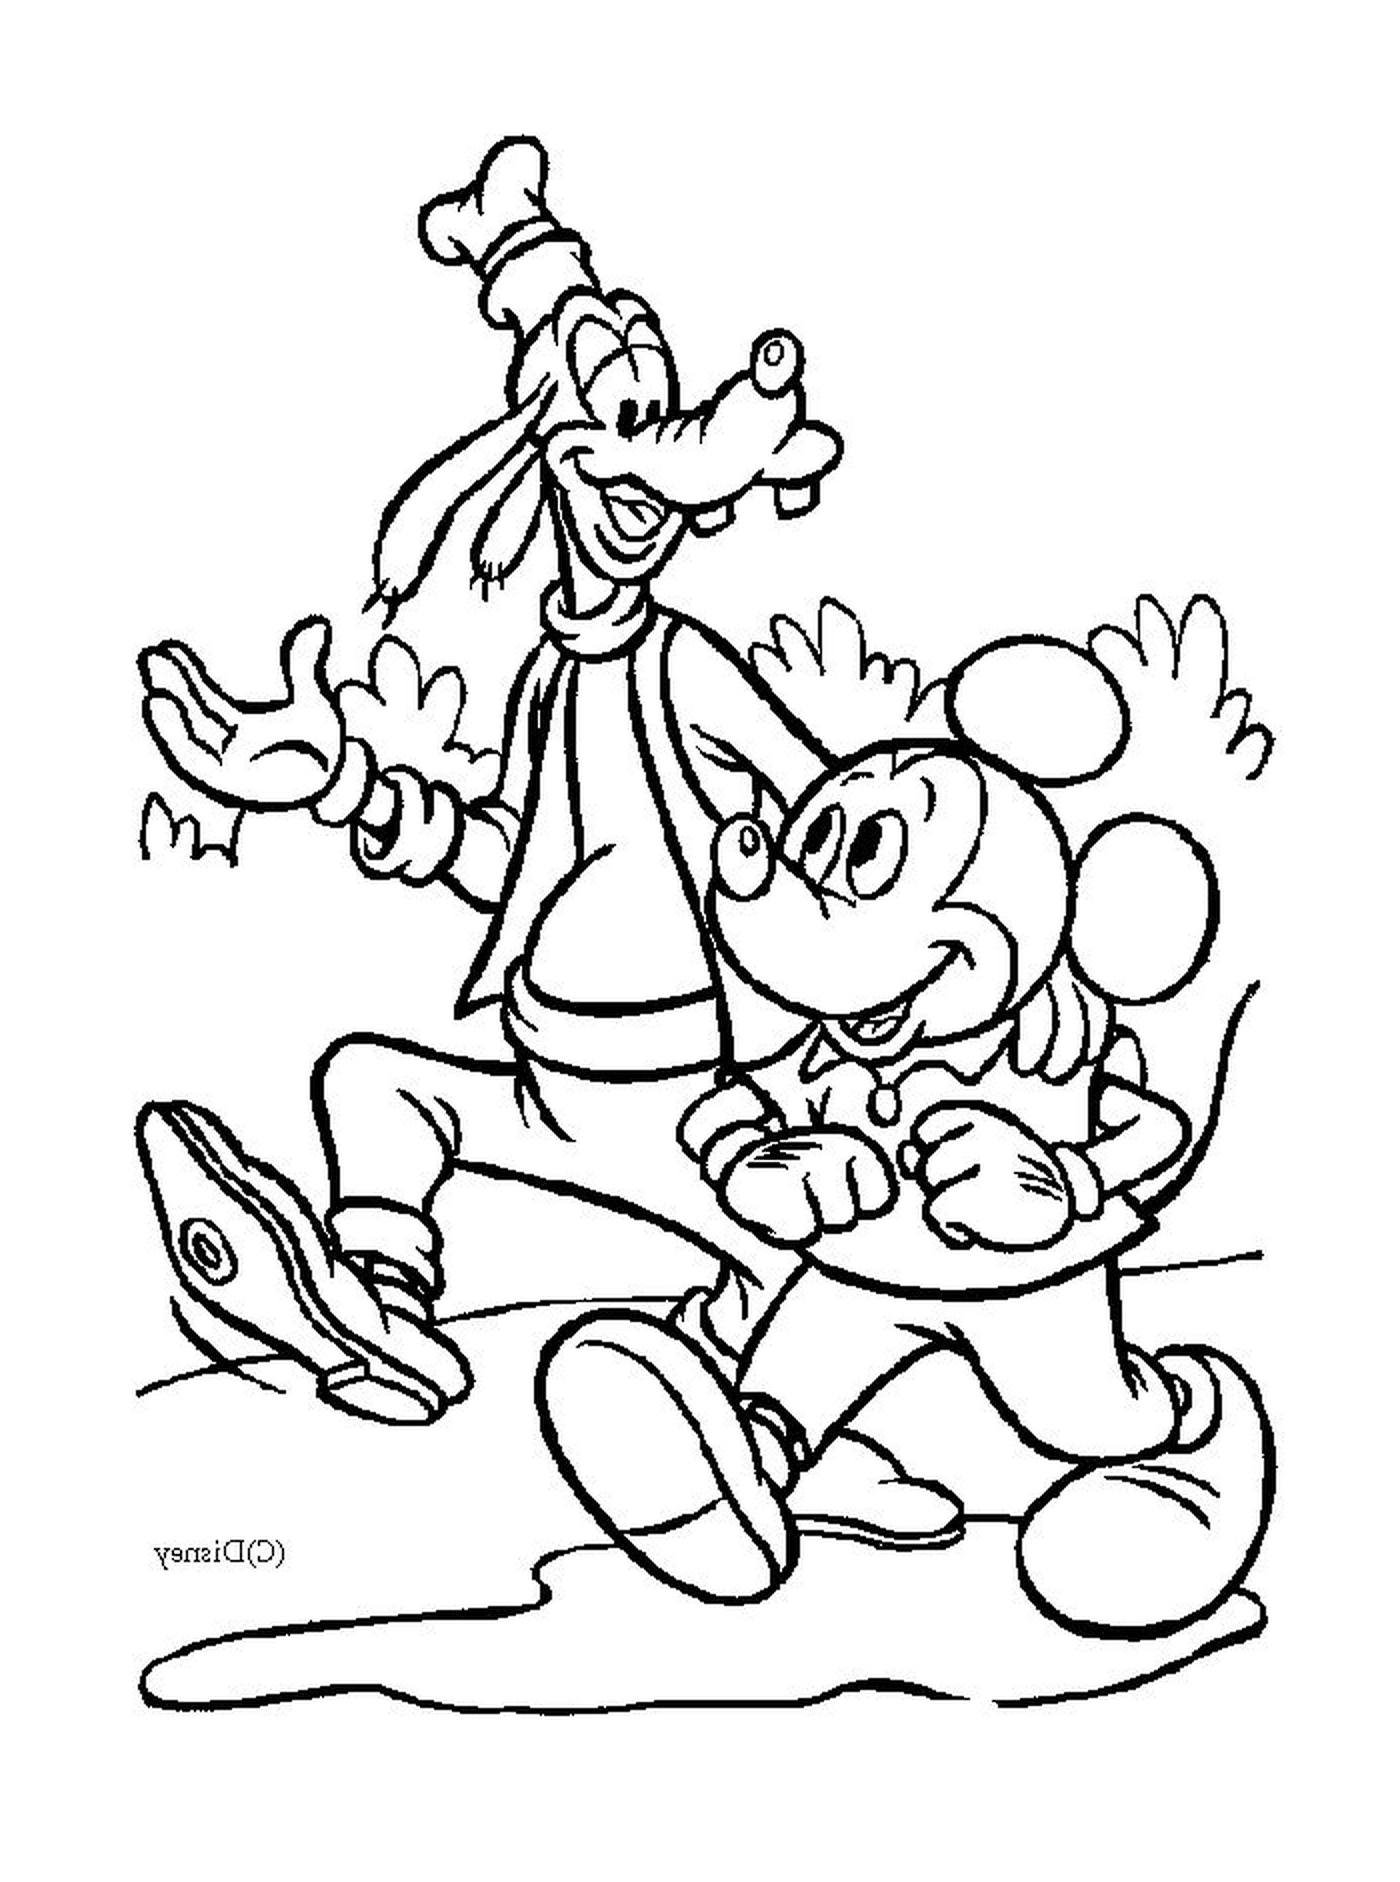  Mickey e il suo amico Dingo vanno in giro 